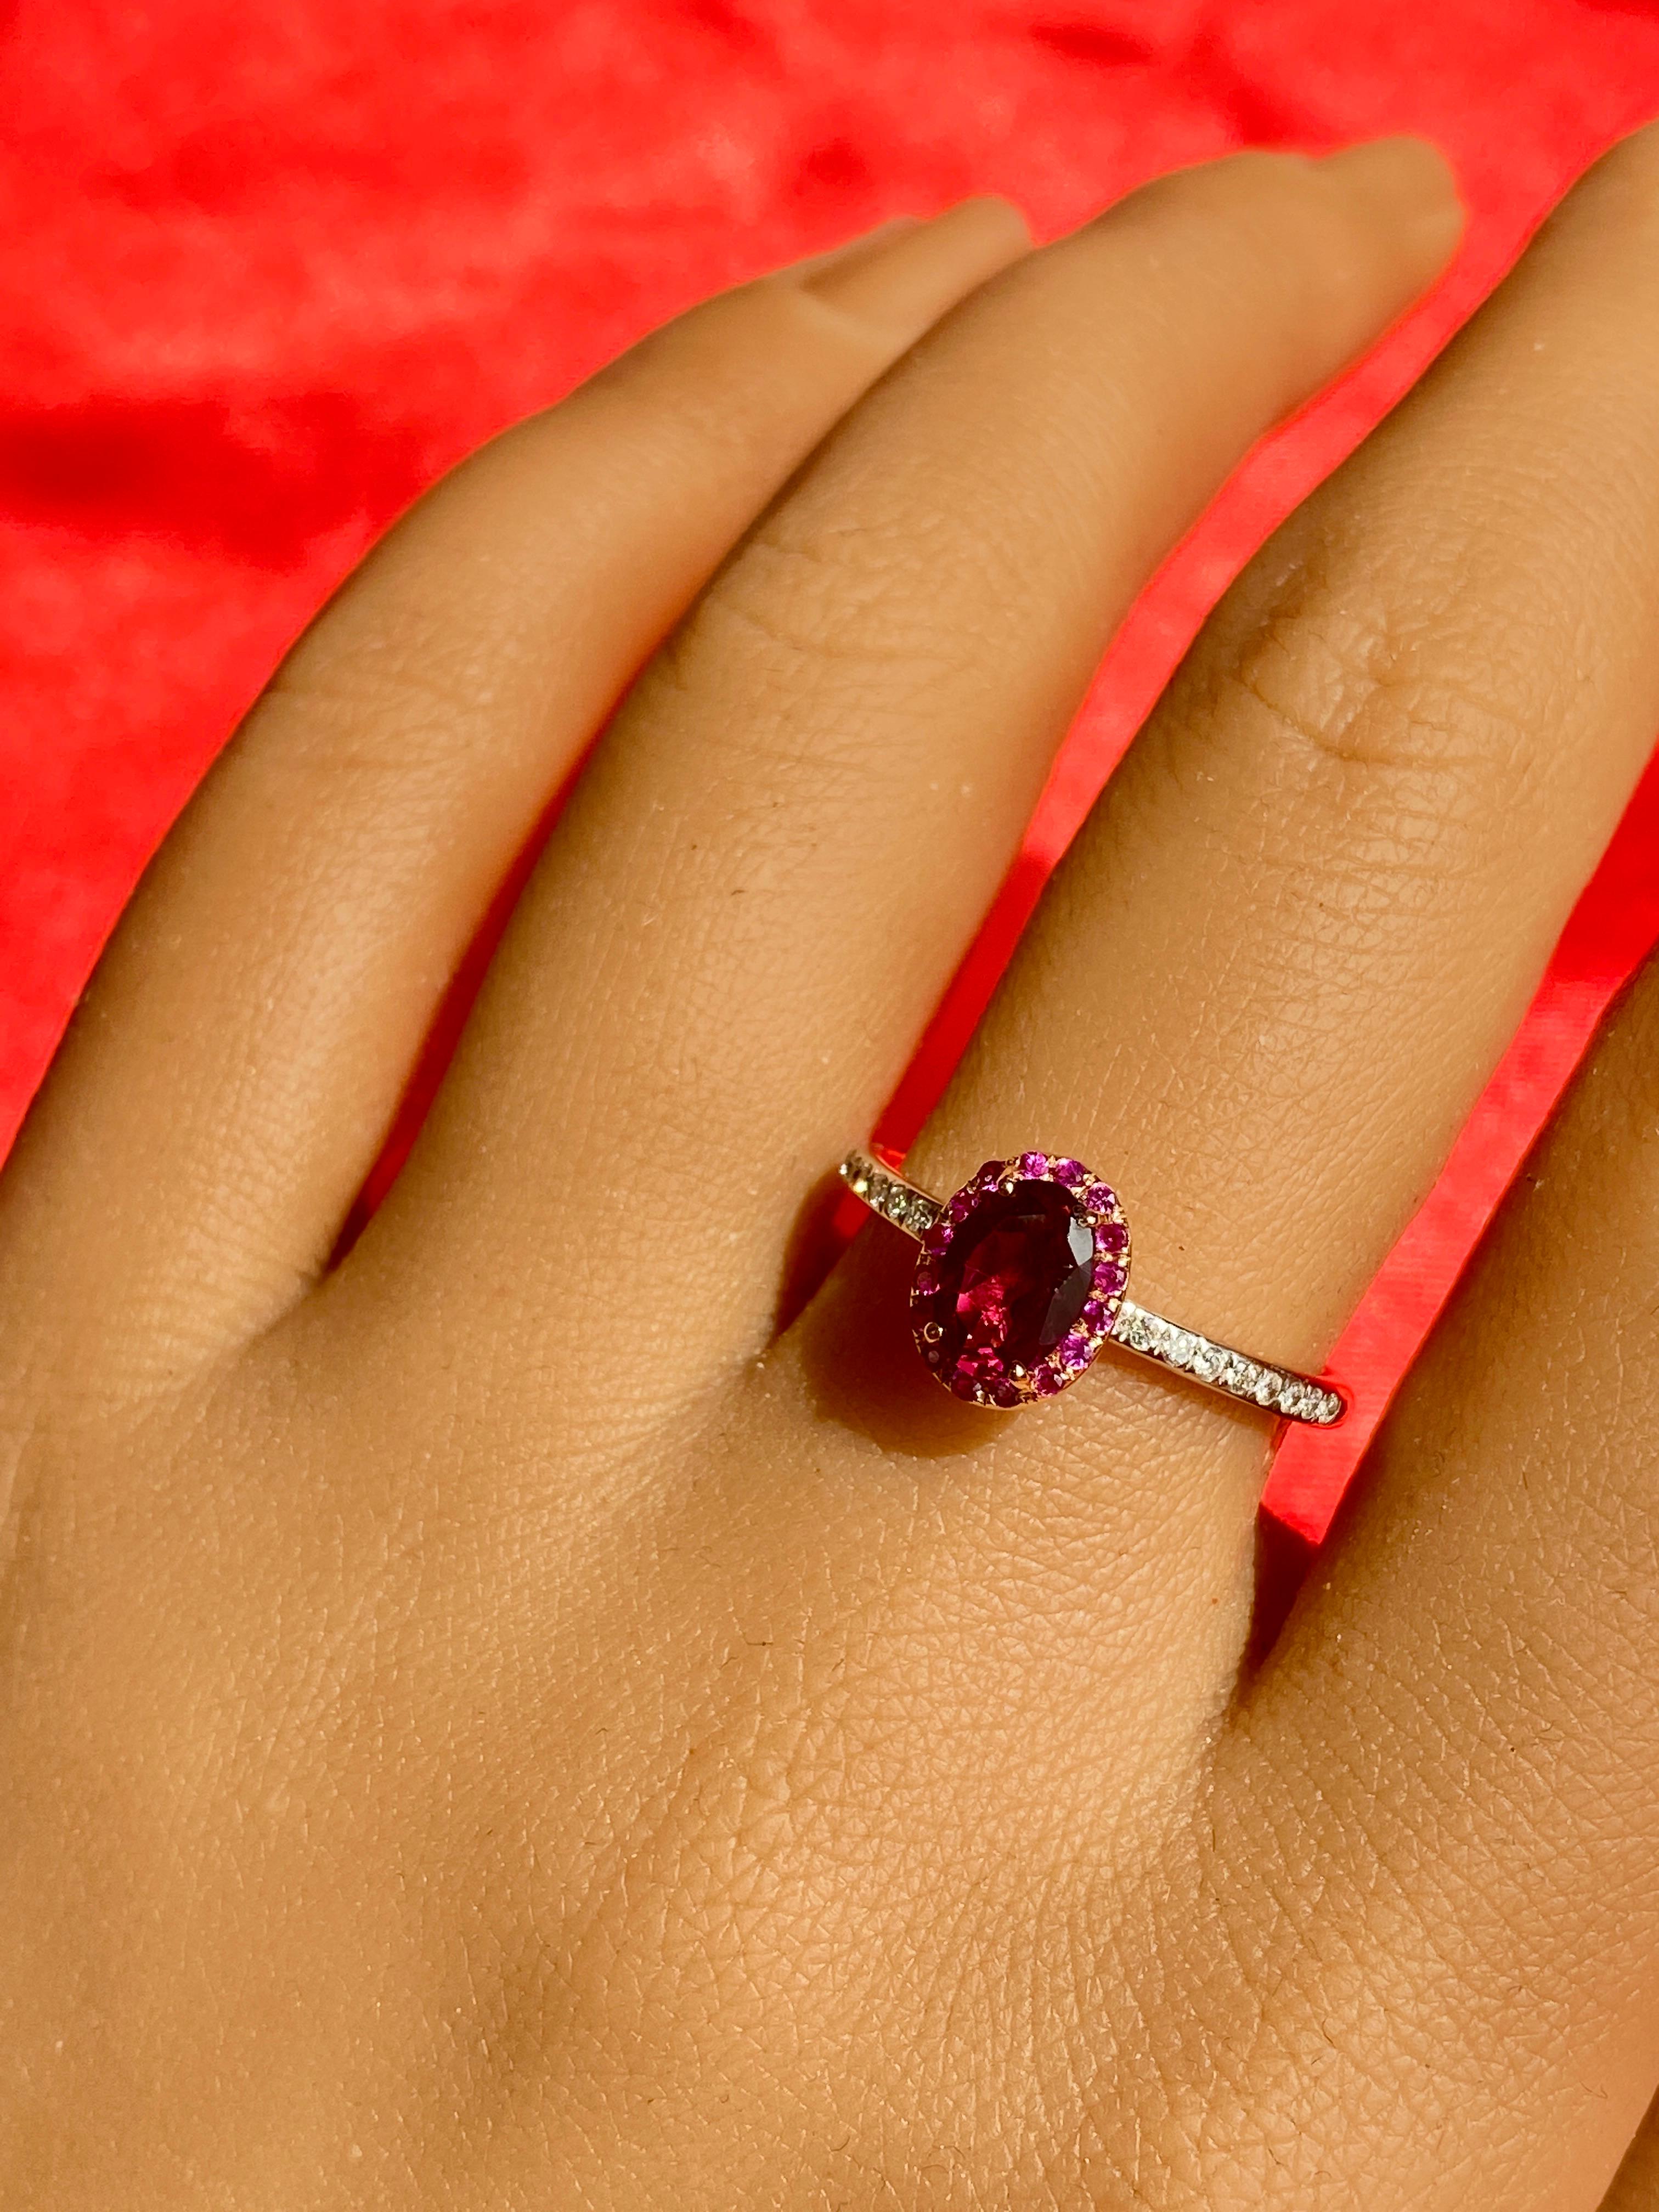 Notre bague en grenat violet ! La pierre centrale est un magnifique grenat rhodolite ! Le halo est composé de merveilleux rubis rouges, et la tige est ornée de diamants blancs ronds ! Il s'agit d'une bague unique avec des couleurs chaudes qui se